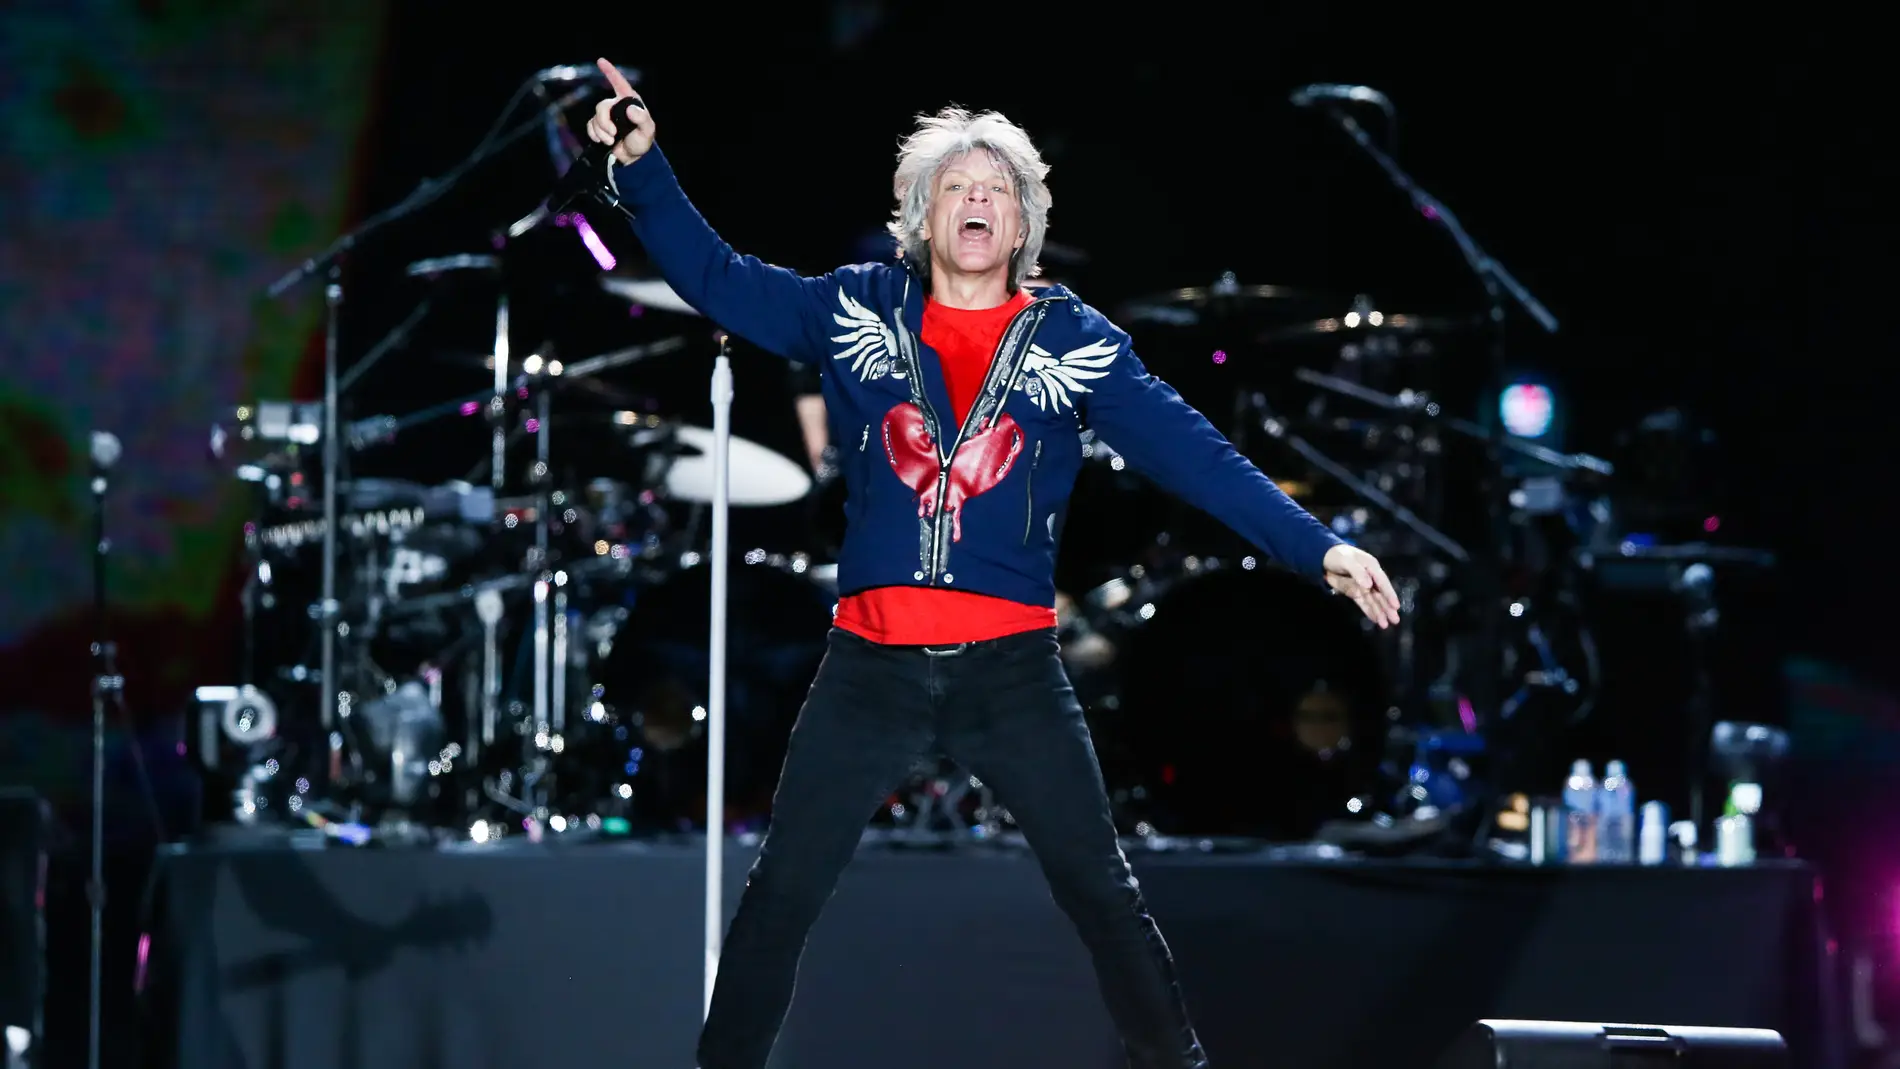 El cantante Bon Jovi en concierto